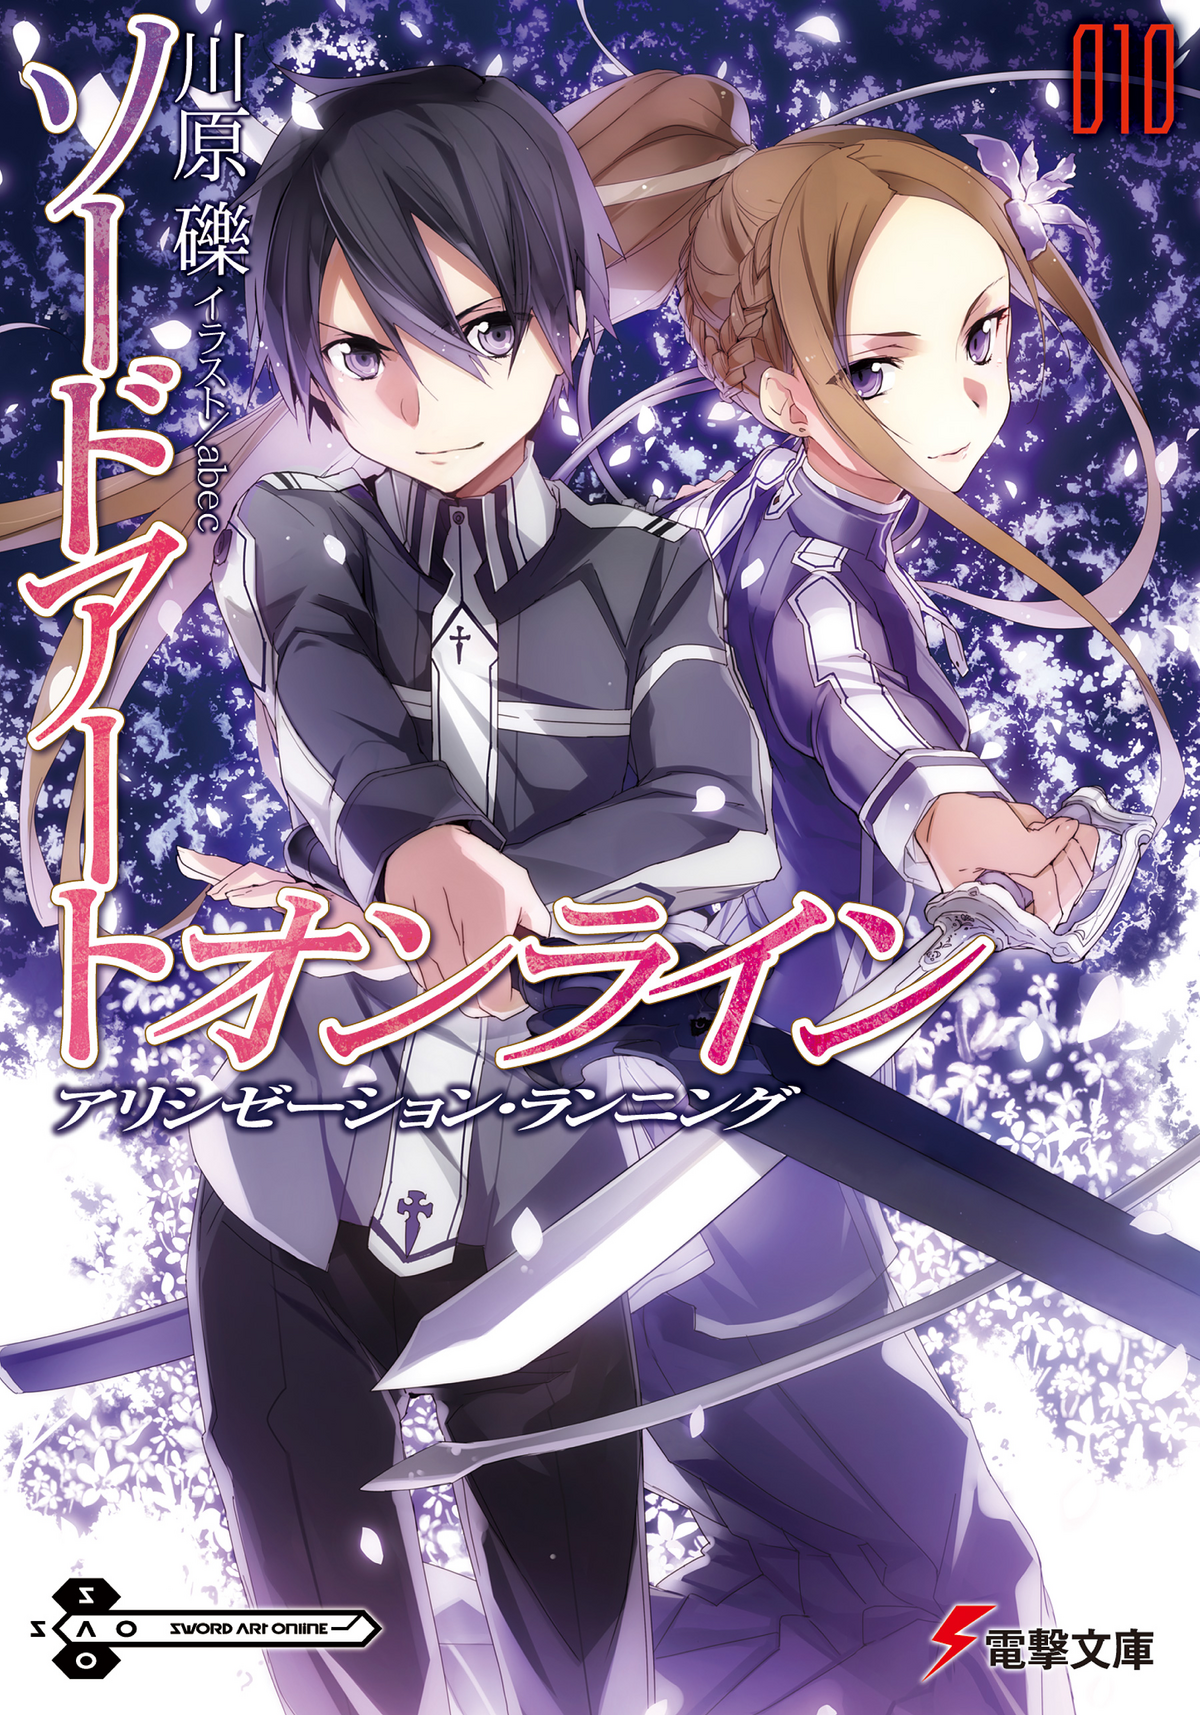 Sword Art Online Light Novel Volume 18